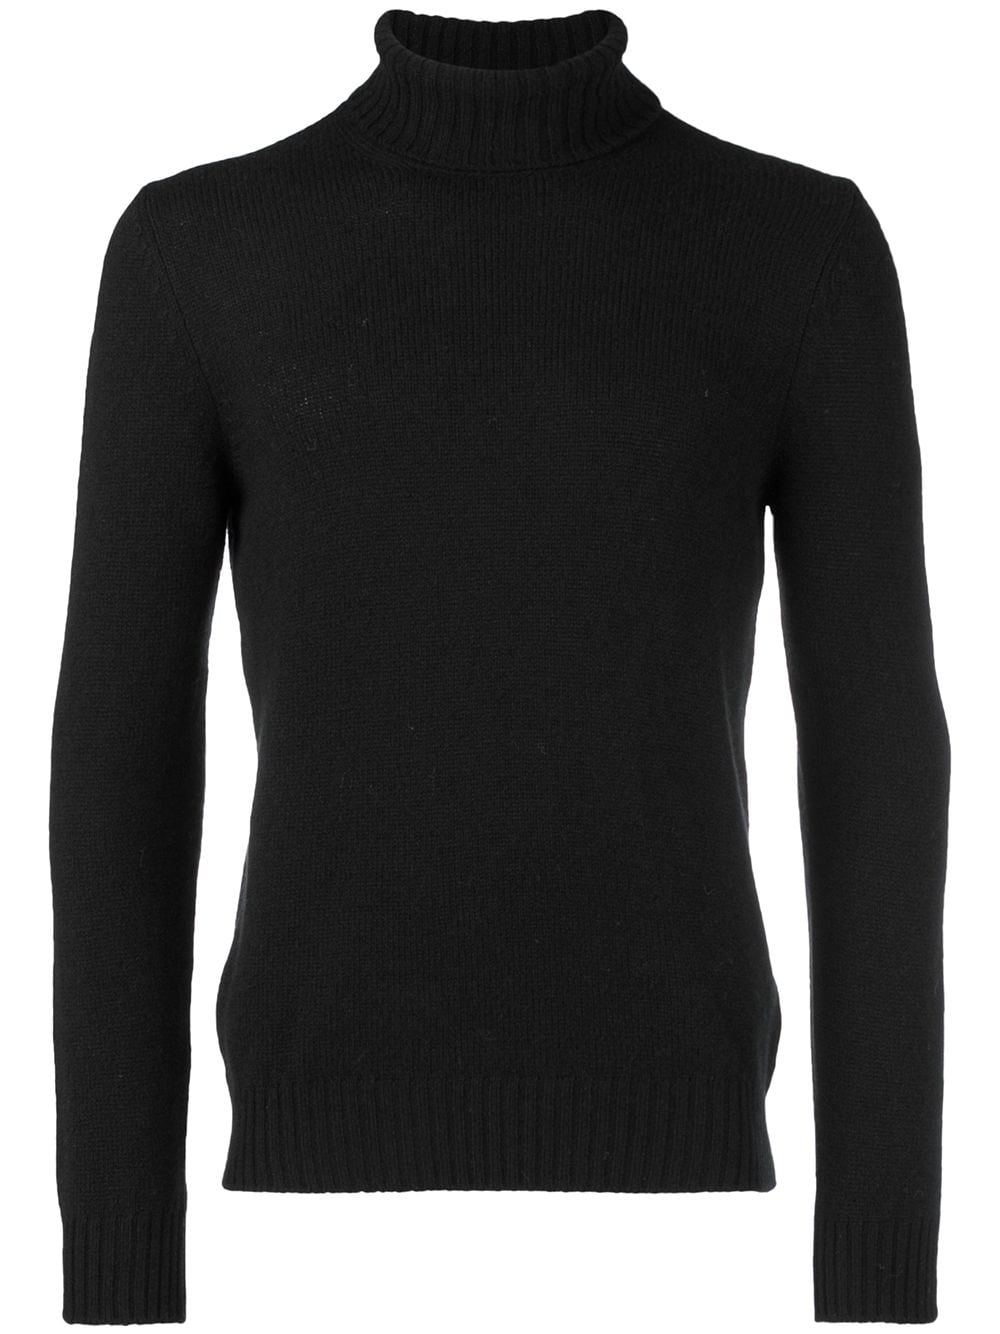 La Fileria For D'aniello roll-neck fitted sweater